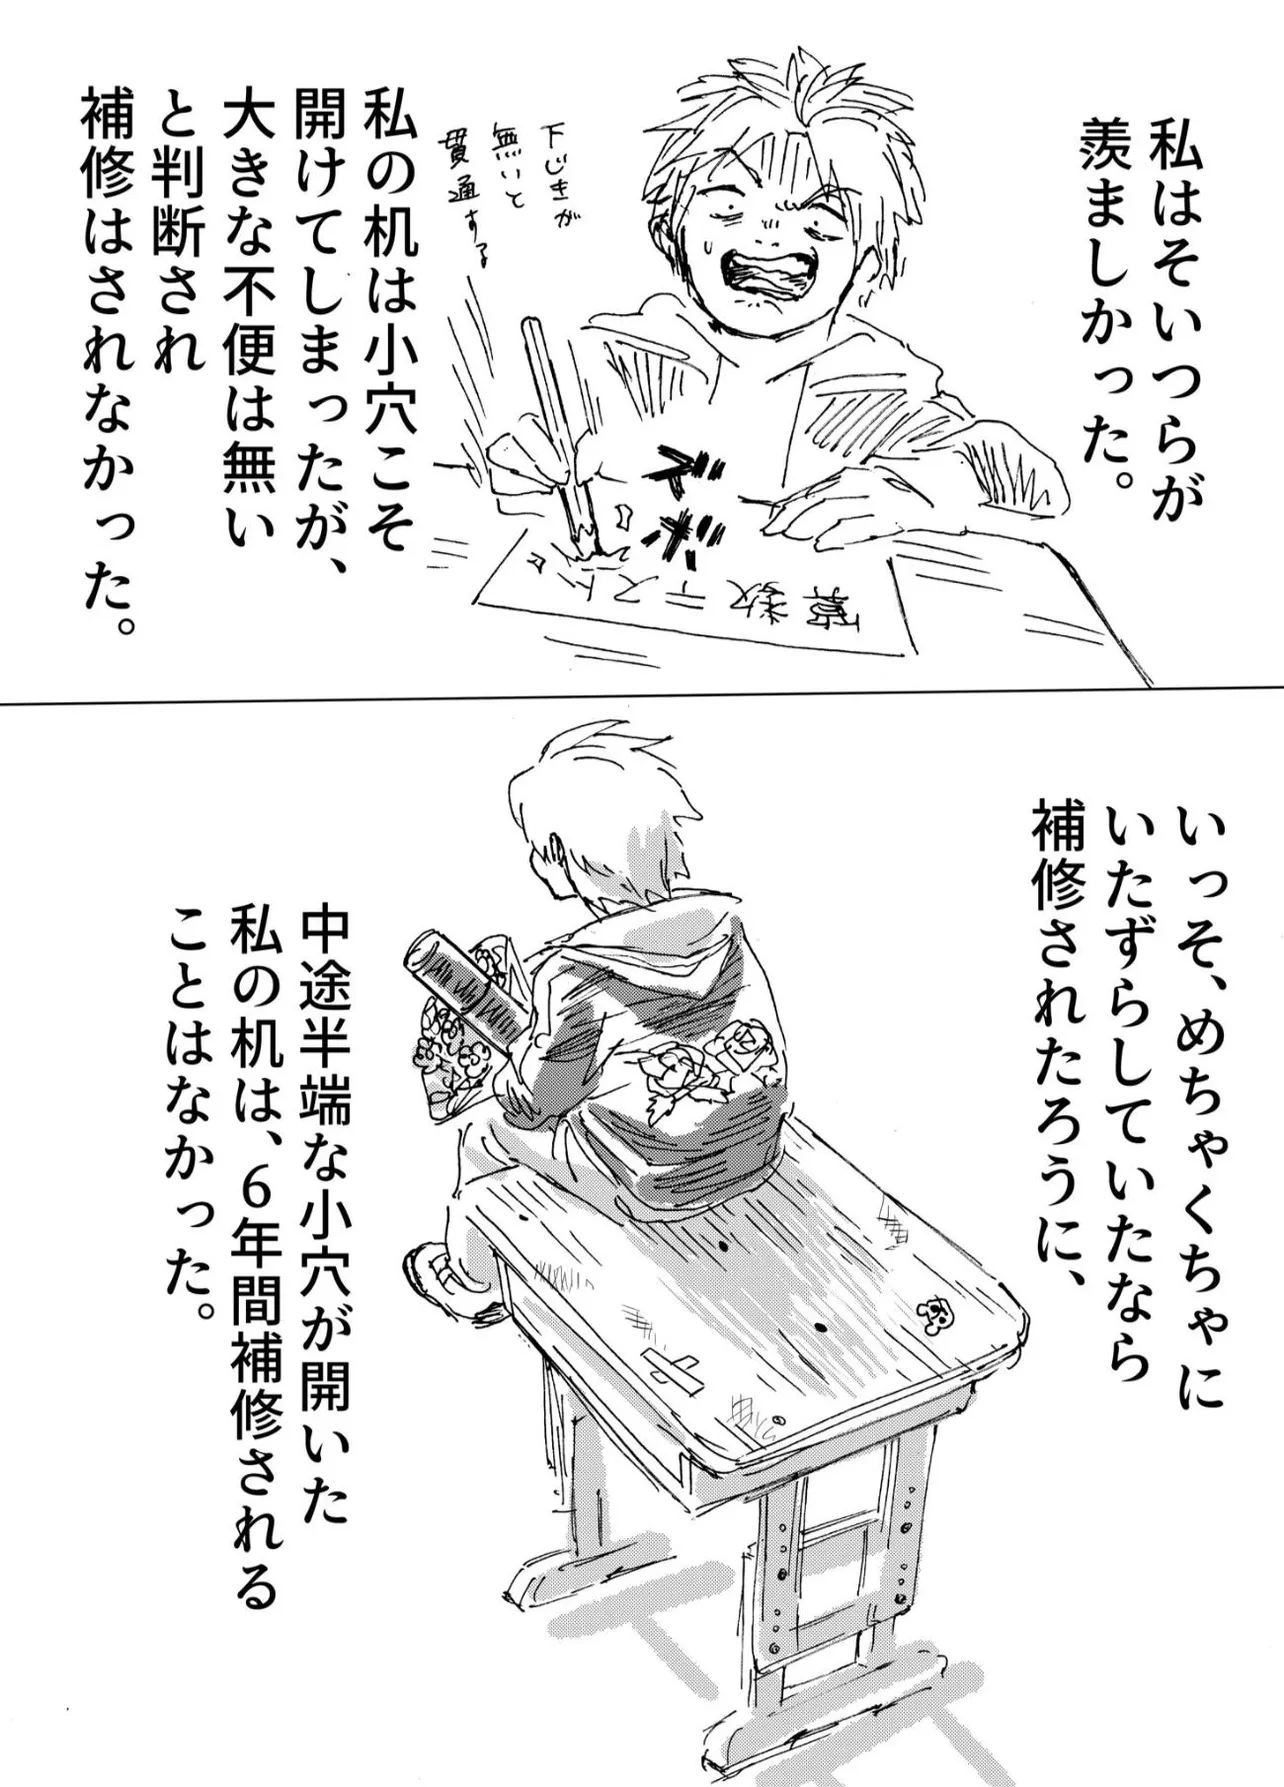 『小学校の机が変だった話』(5／7)